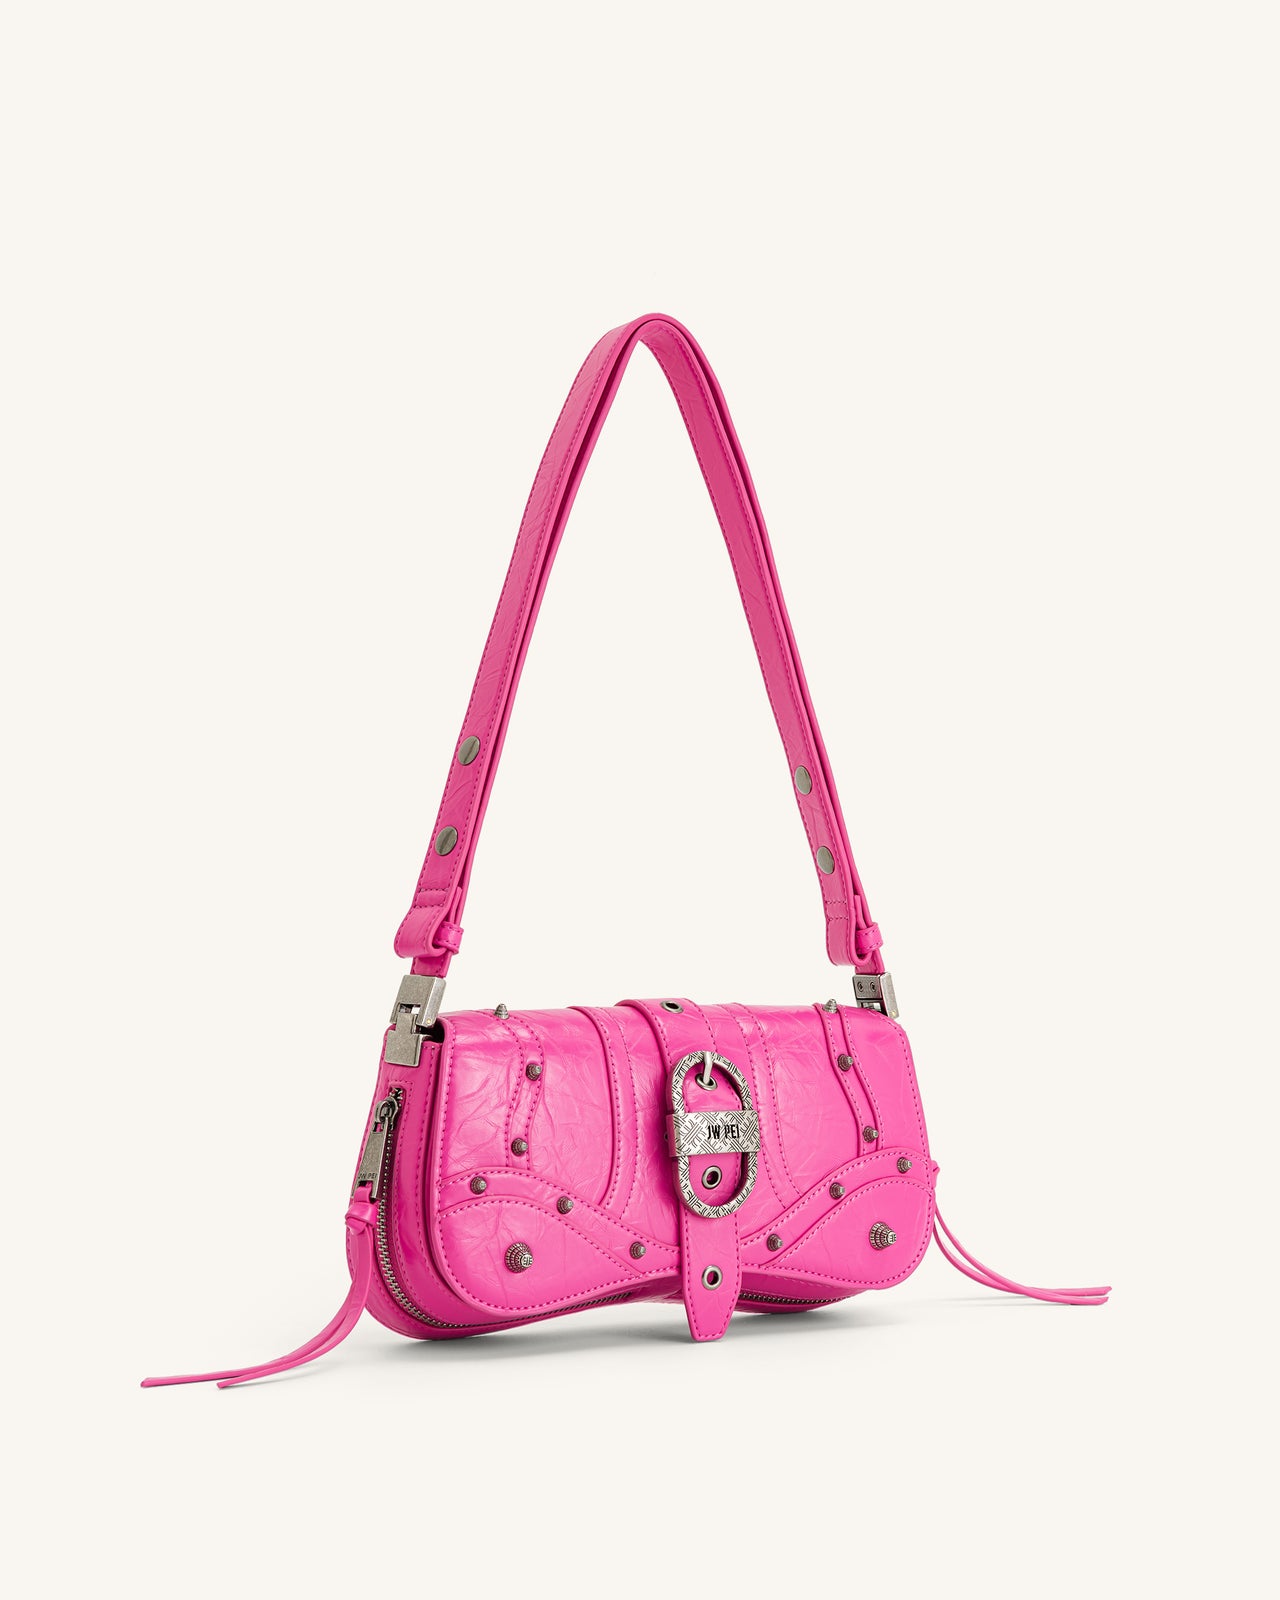 Joy Crushed Shoulder Bag - Bright Pink